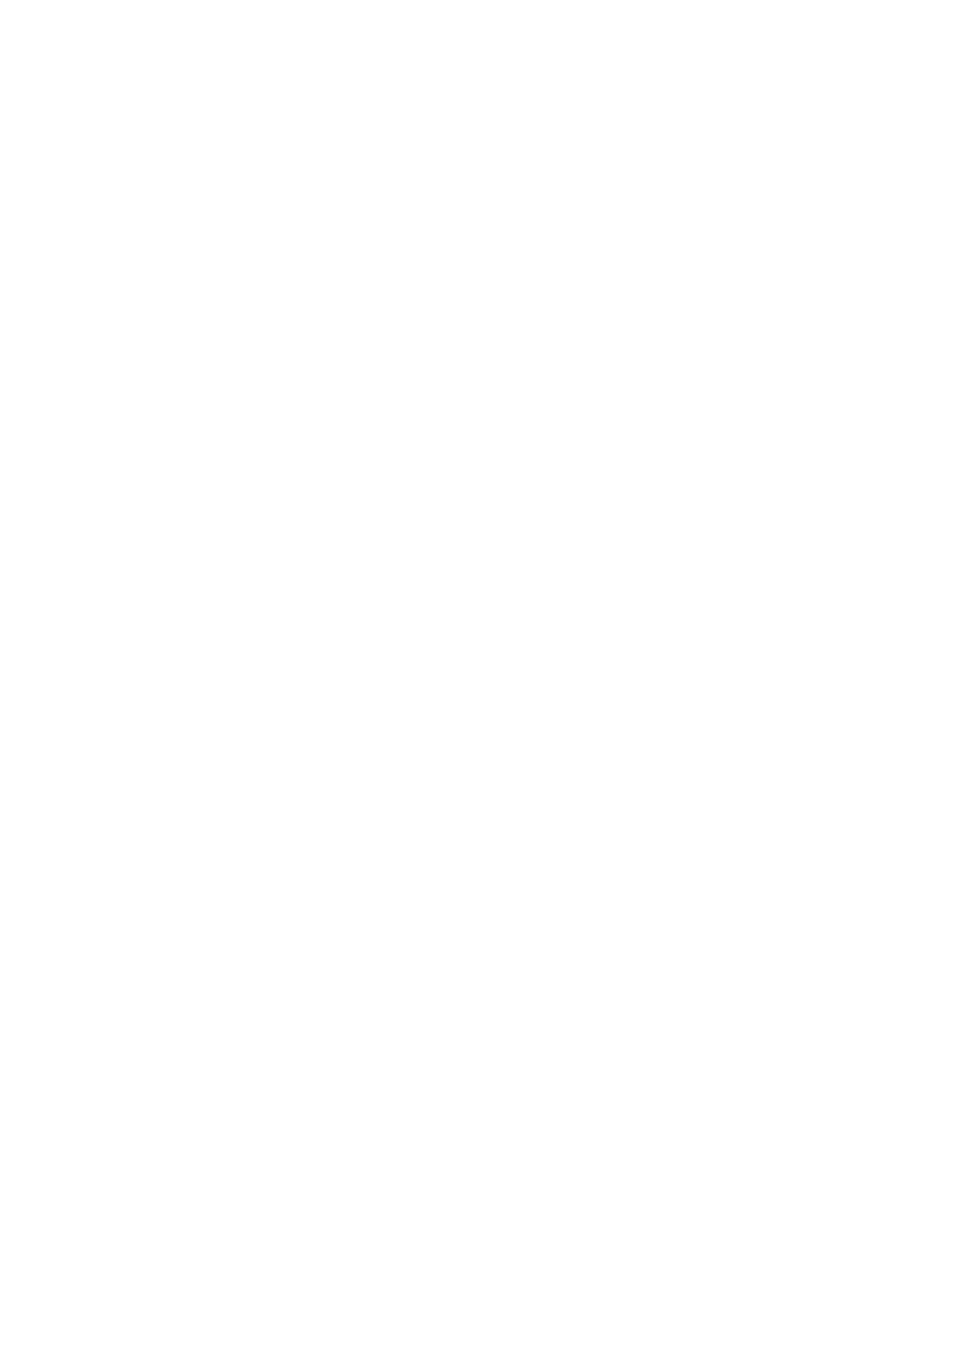 ζηην Καθηγήηπια Φλώπος Γιαννούλα Από ηοςρ ζποςδαζηέρ: ΓΟΤΓΑΜΑΝΟ ΔΛΔΤΘΔΡΙΟ (Άζππορ, 61200